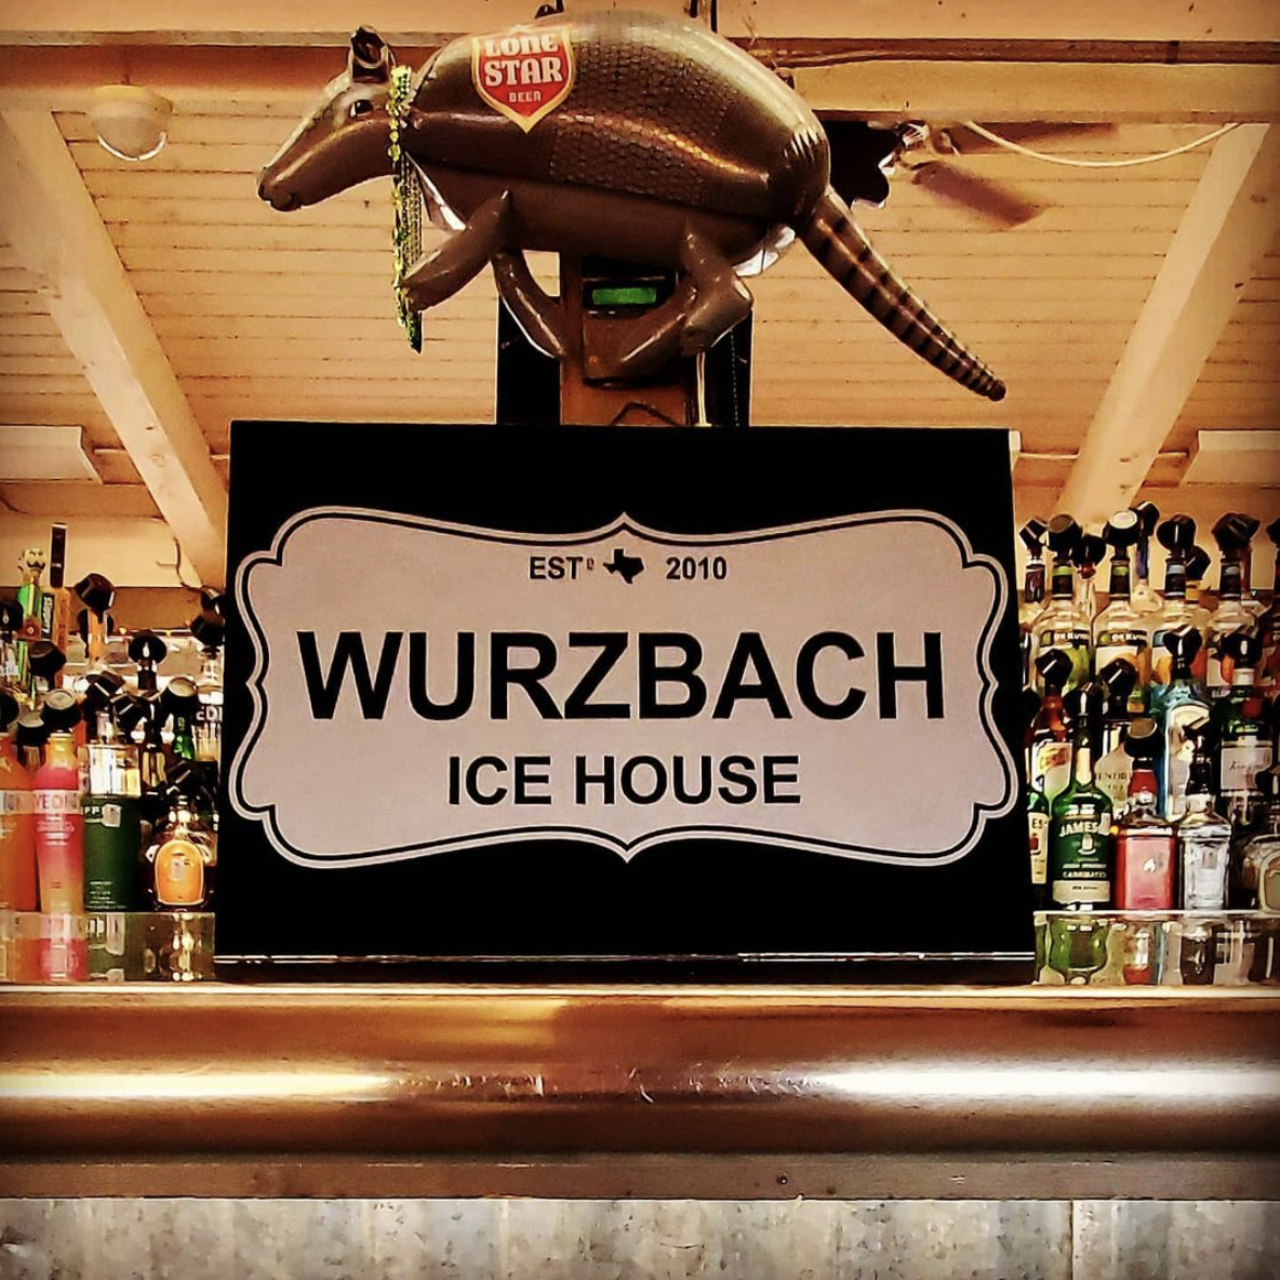 Best Happy Hour
Wurzbach Ice House, 10141 Wurzbach Road, (210) 877-2100, wurzbachicehouse.com
Photo via Instagram / wurzbach_ice_house